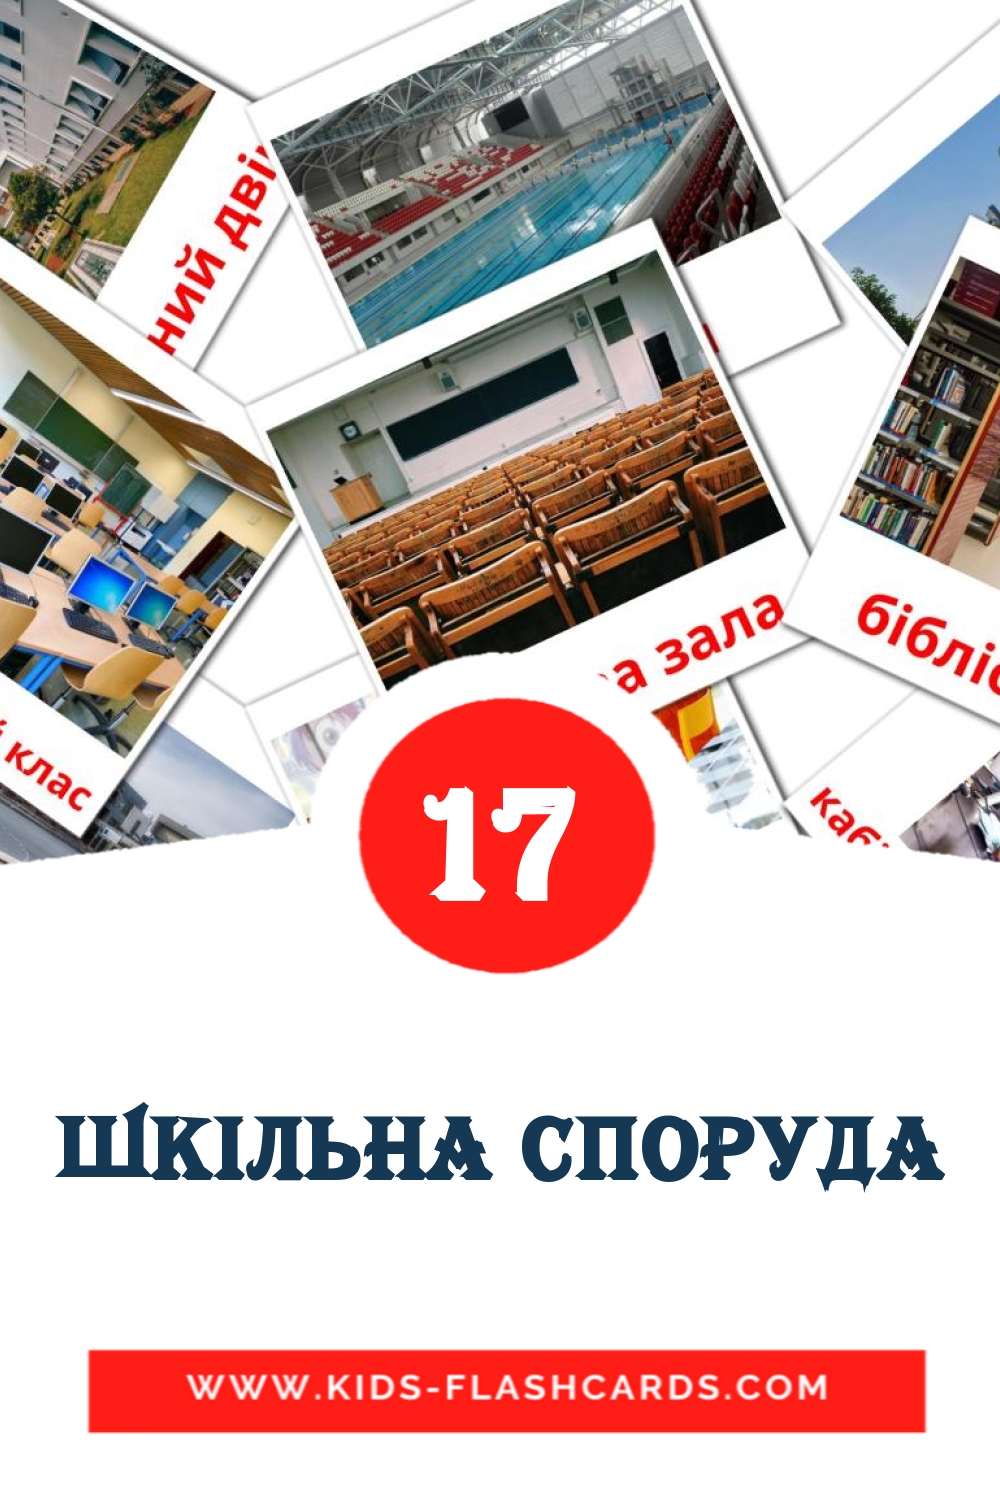 17 tarjetas didacticas de Шкiльна споруда para el jardín de infancia en ucraniano